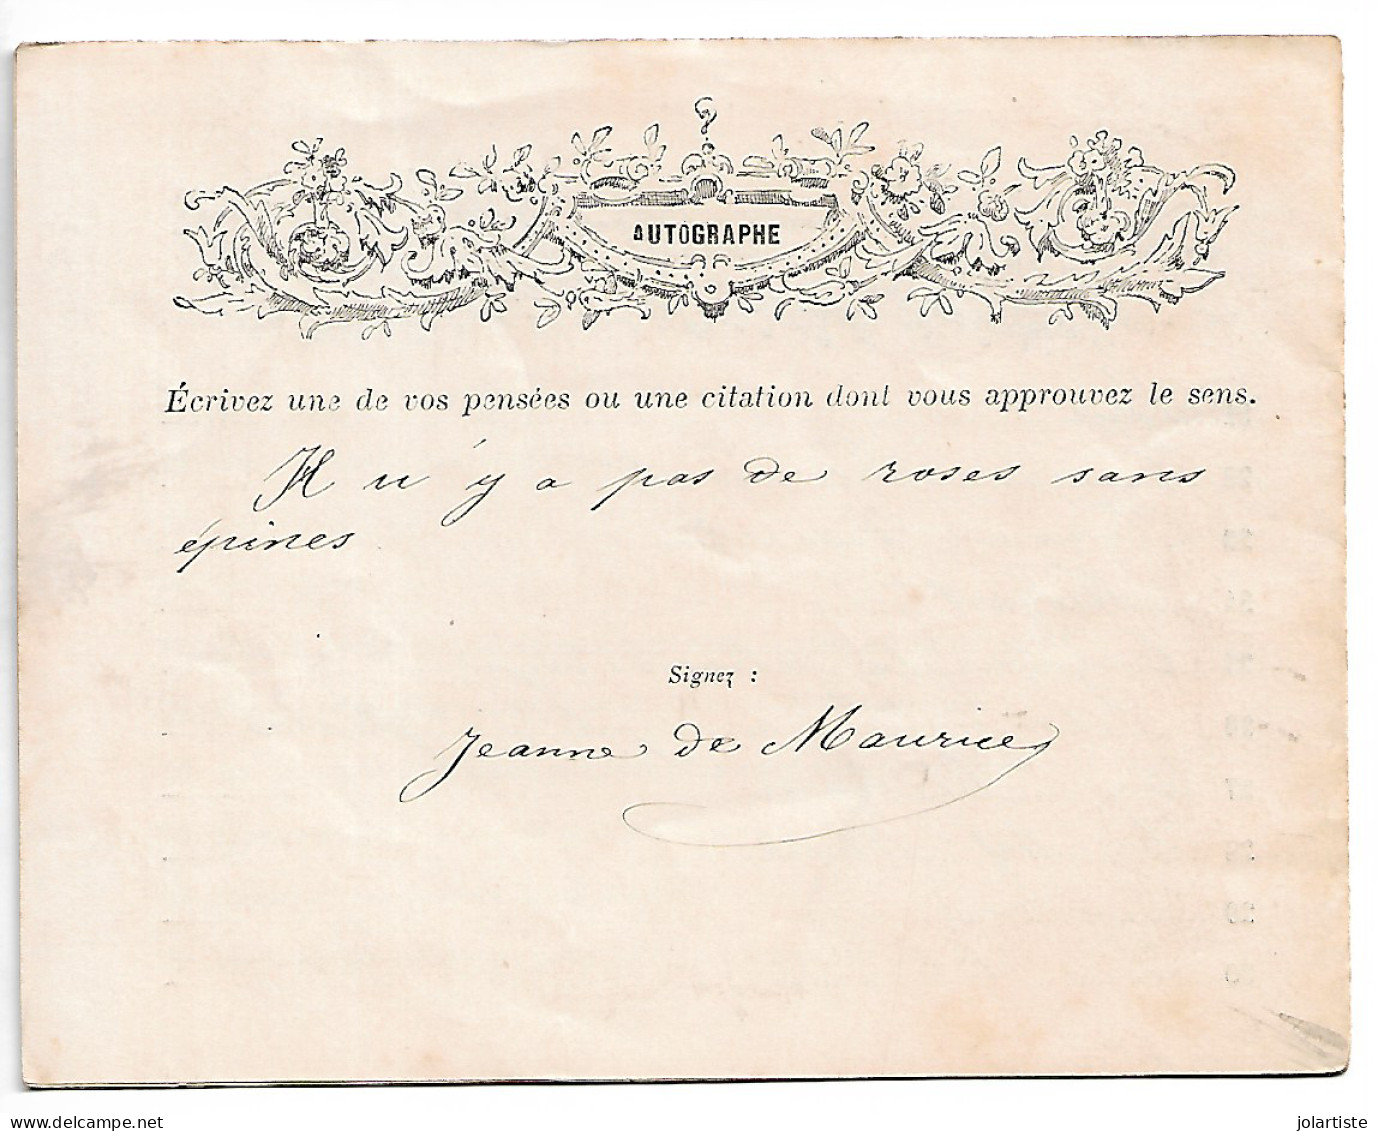 Vitry Le Francois (51) 1882 Mes Confidences De Jeanne DE MAURICE De  8 Pages Et Autographe Clas 5 N0174 - Altri & Non Classificati